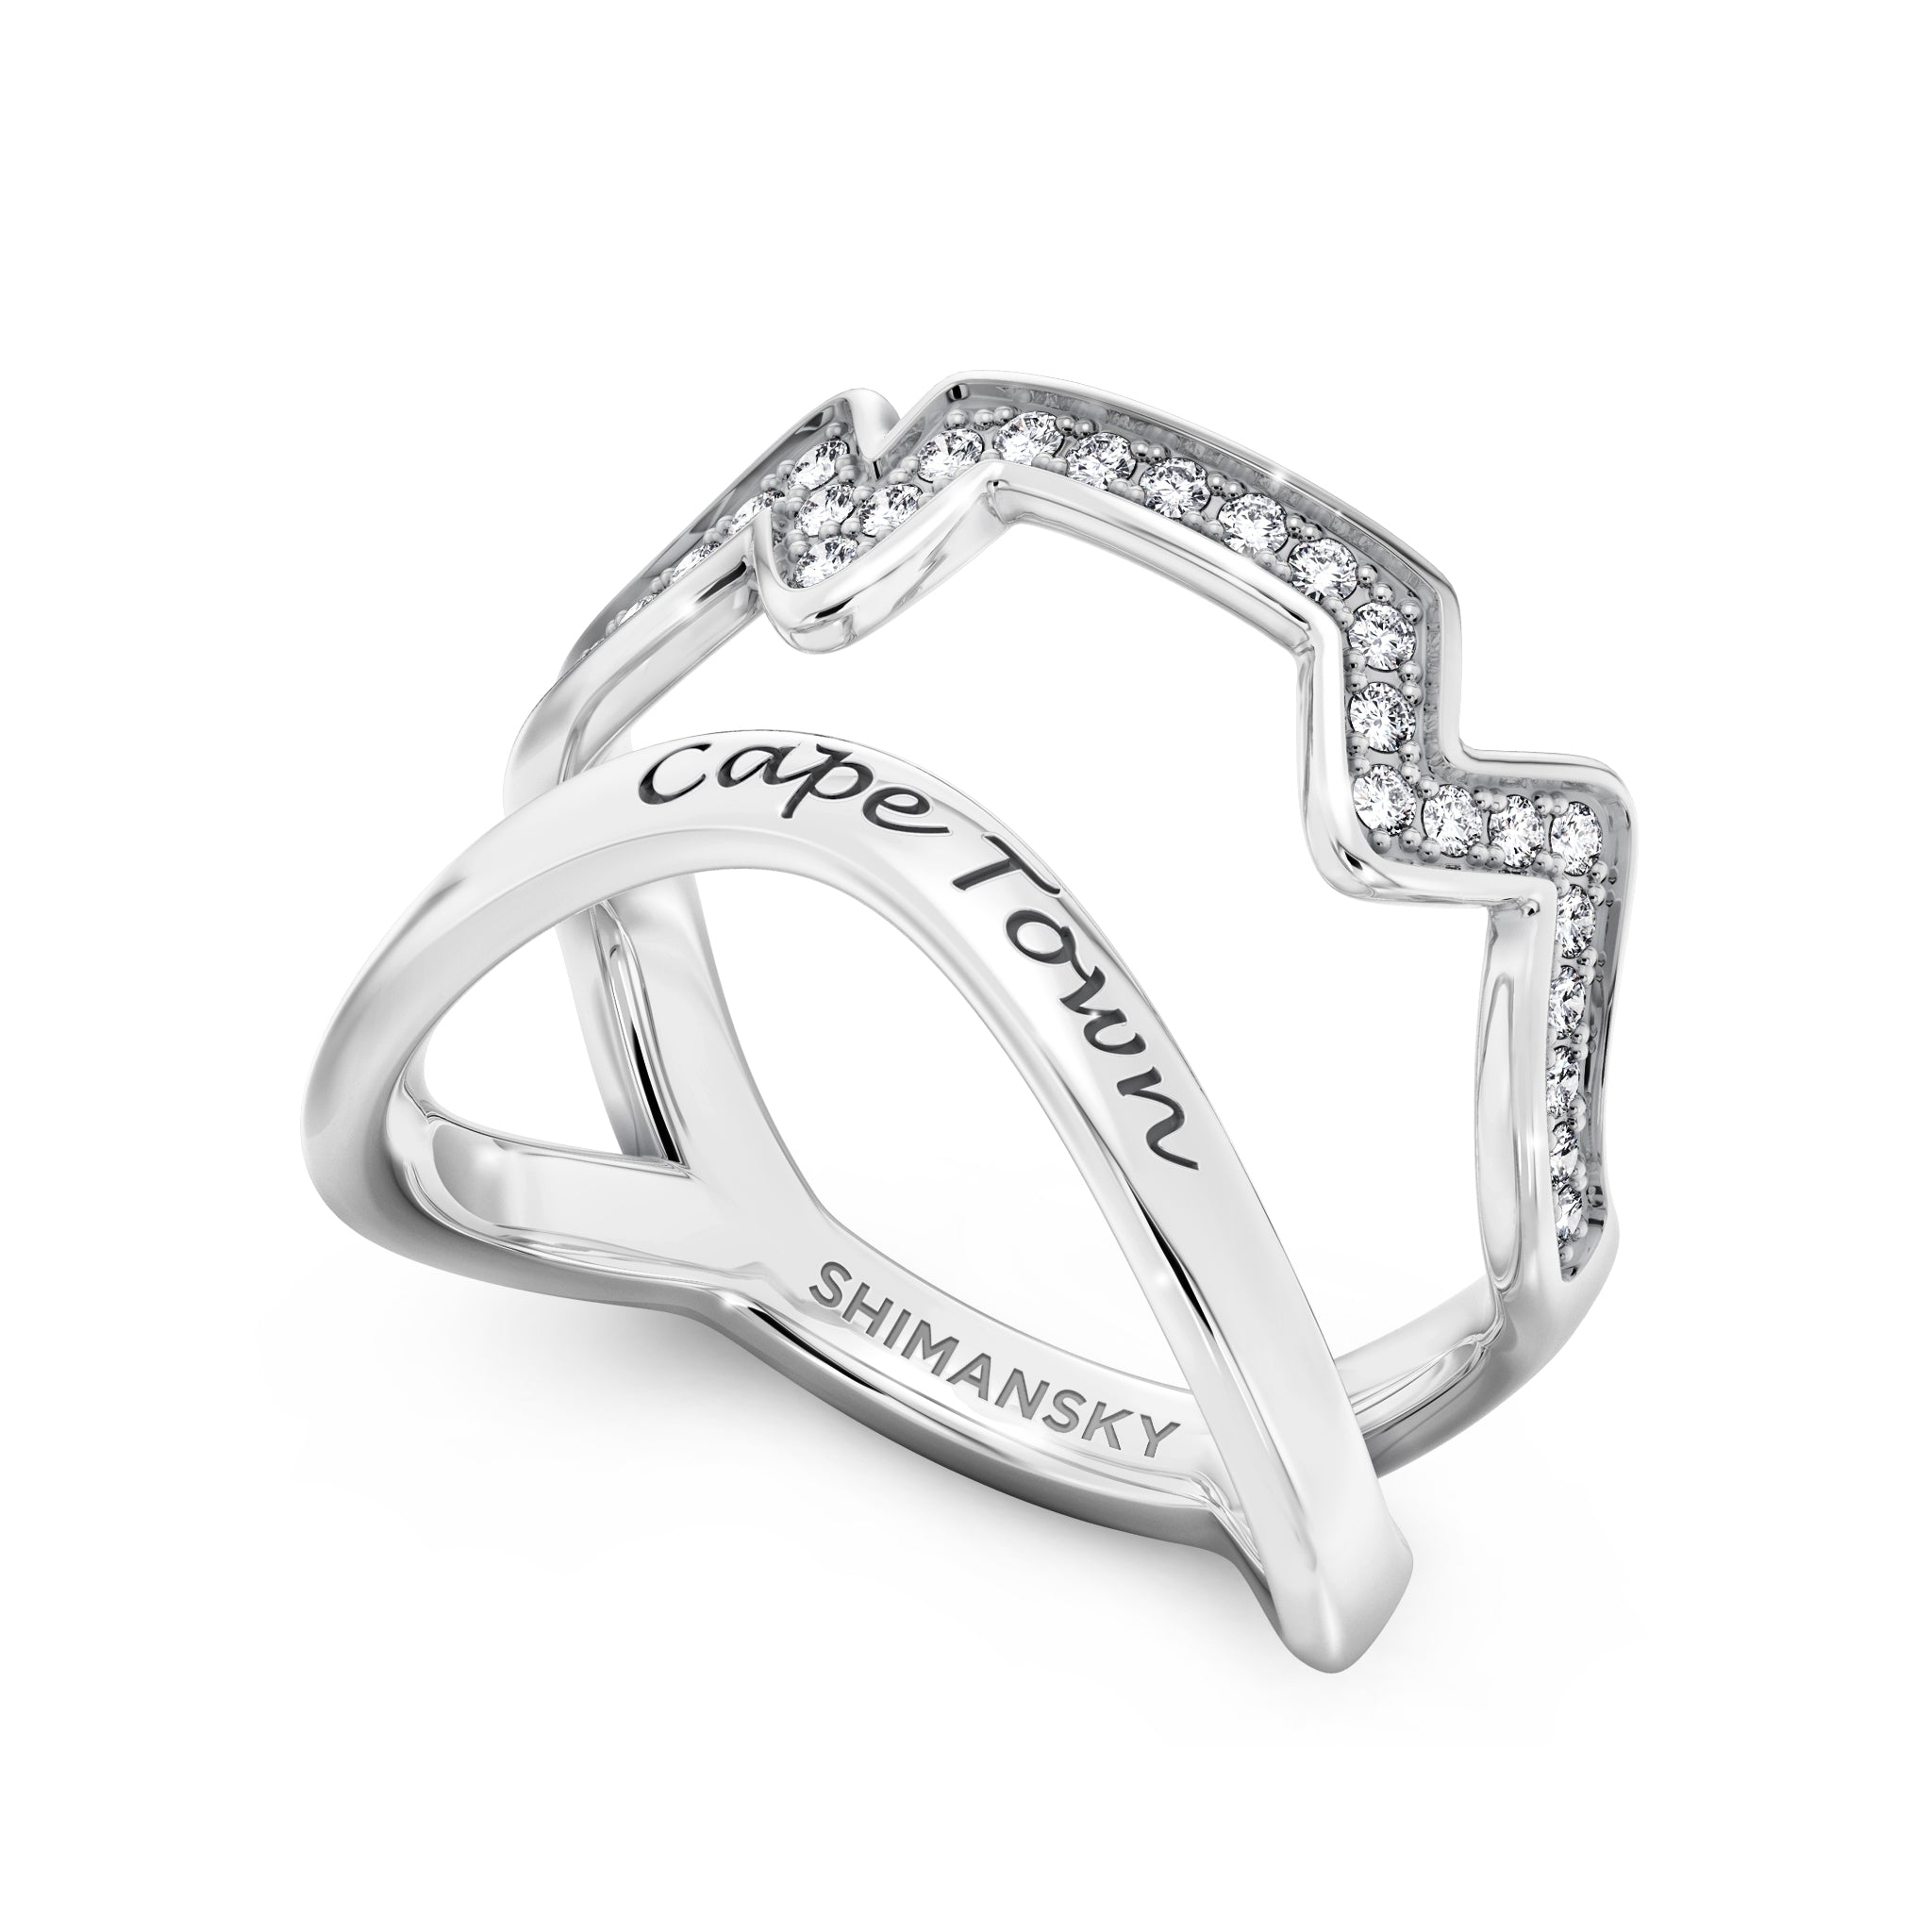 Cape Town Single Row Diamond Ring Shimansky